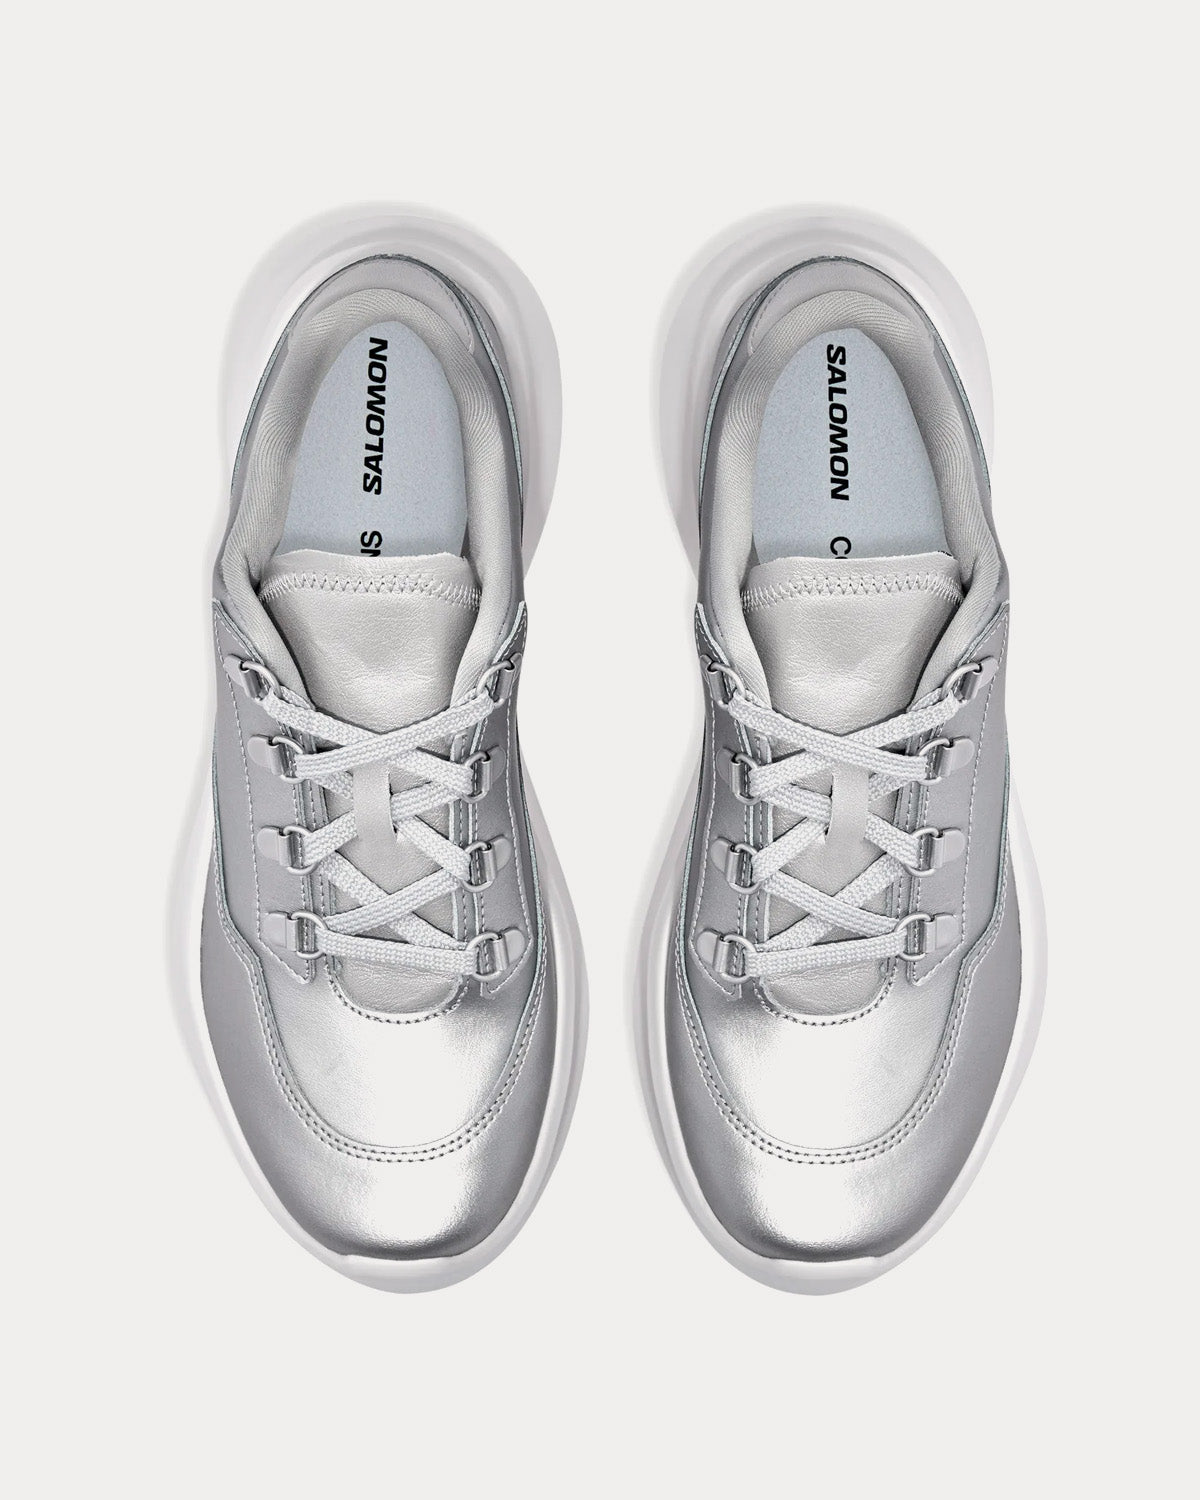 Salomon x Comme des Garçons - SR811 Platform Leather Silver Low Top Sneakers